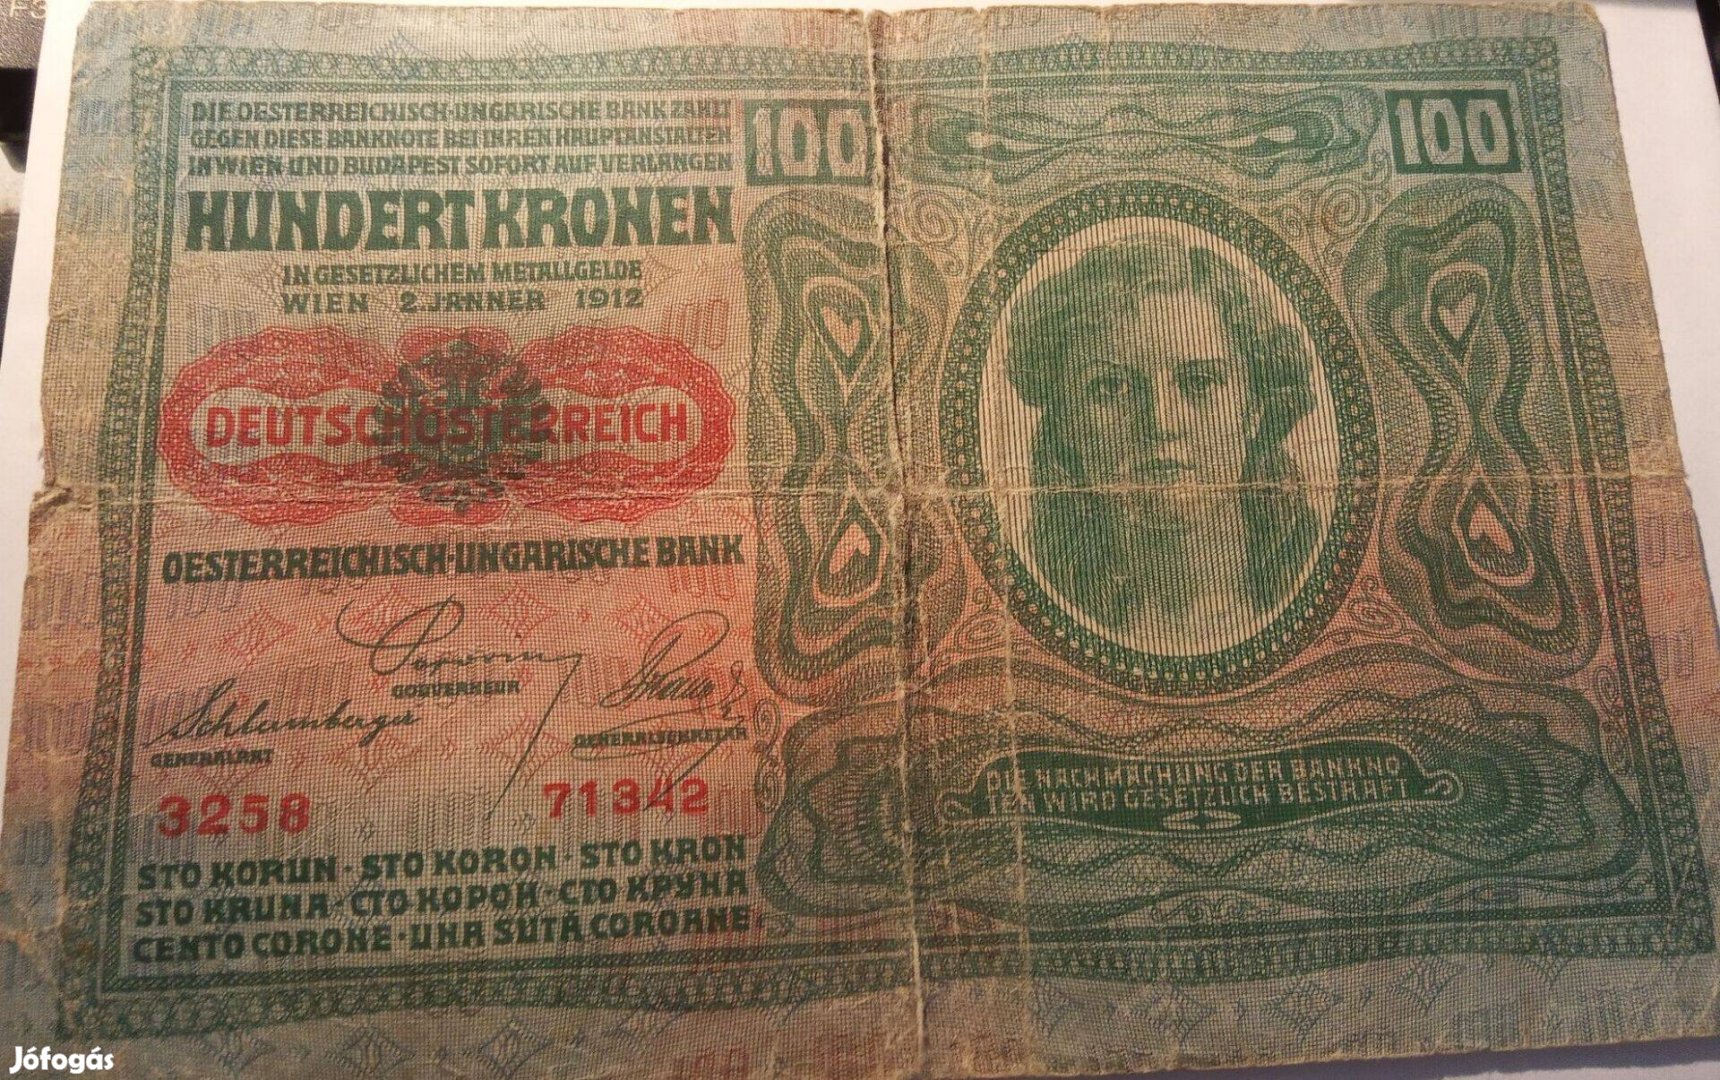 Osztrák magyar bankjegy 100 korona 1912 régi forgalmi pénz, papírpénz